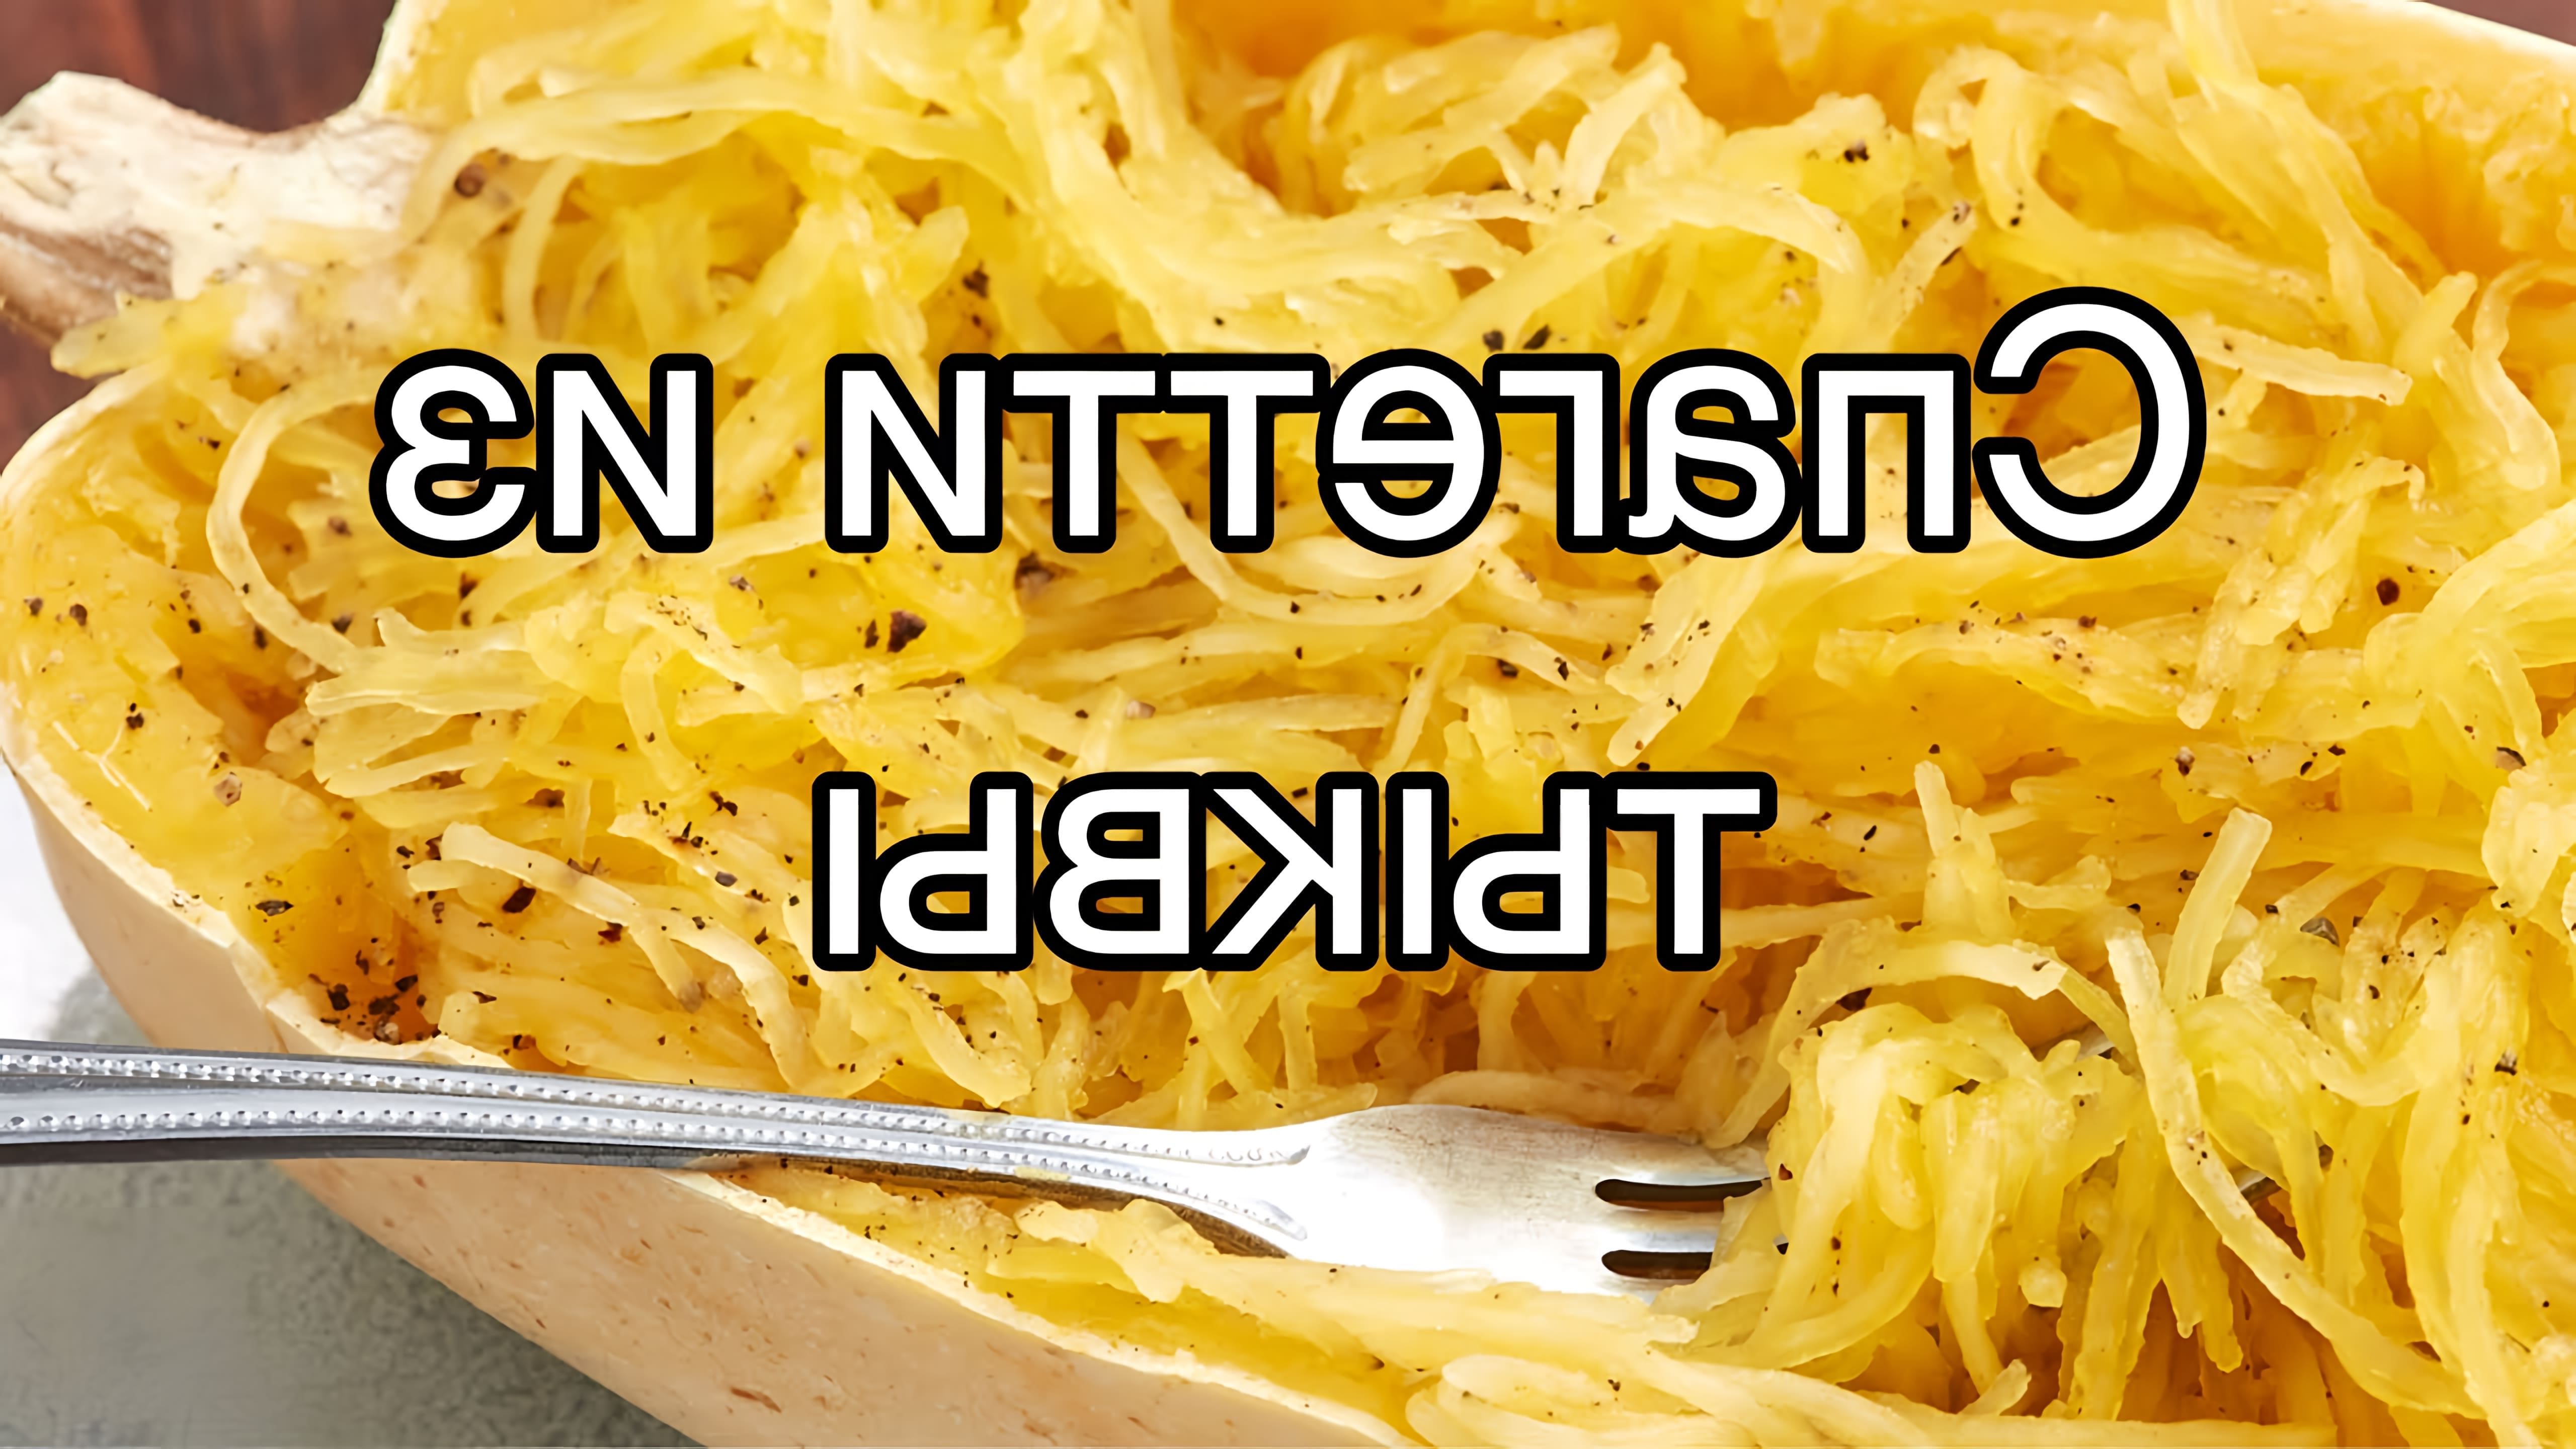 В этом видео демонстрируется простой рецепт приготовления Spaghetti squash/спагетти из тыквы